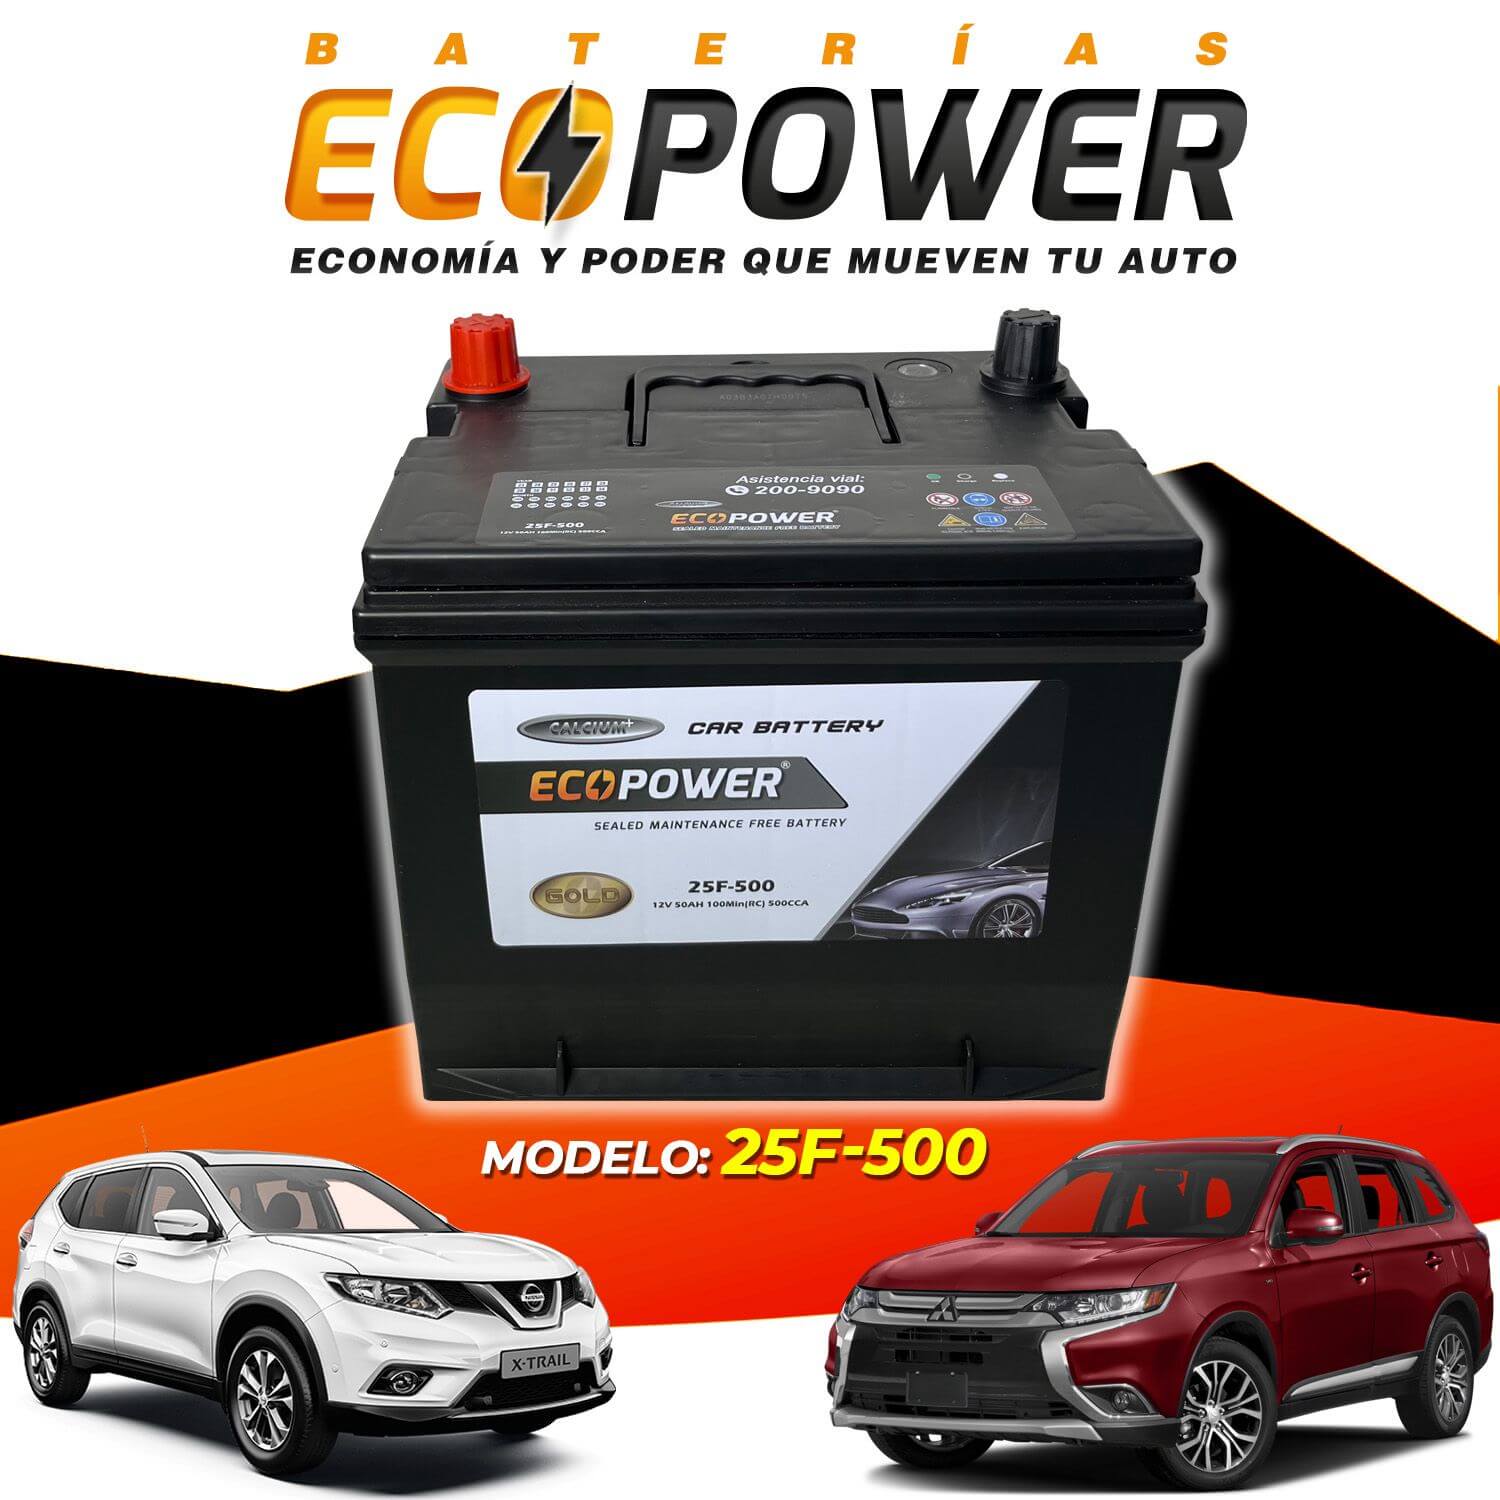 Baterias ecopower